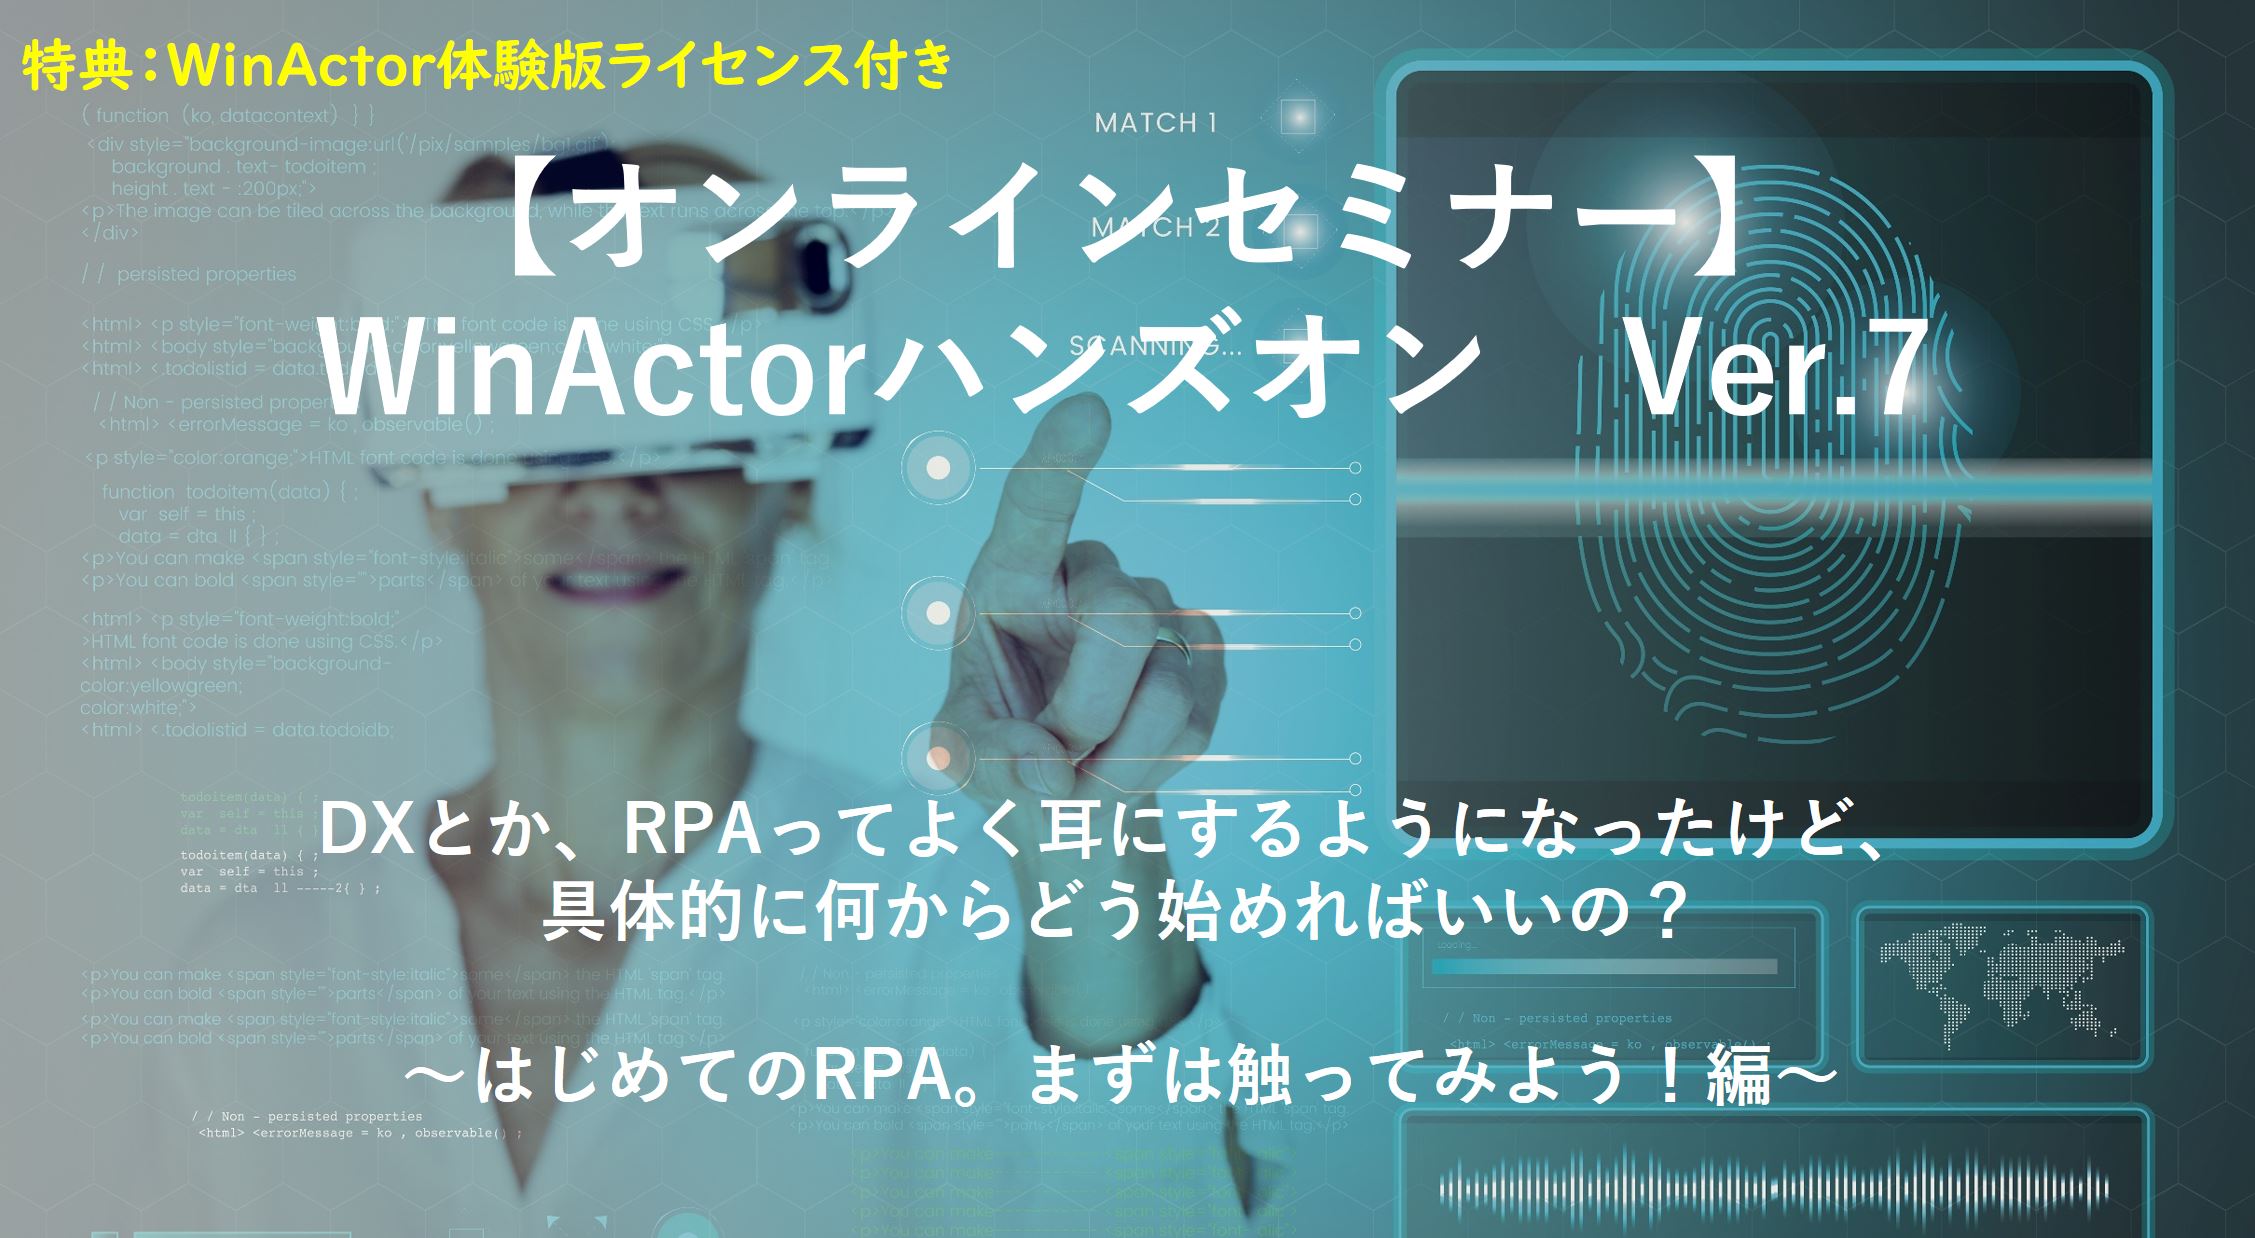 WinActor Ver.7